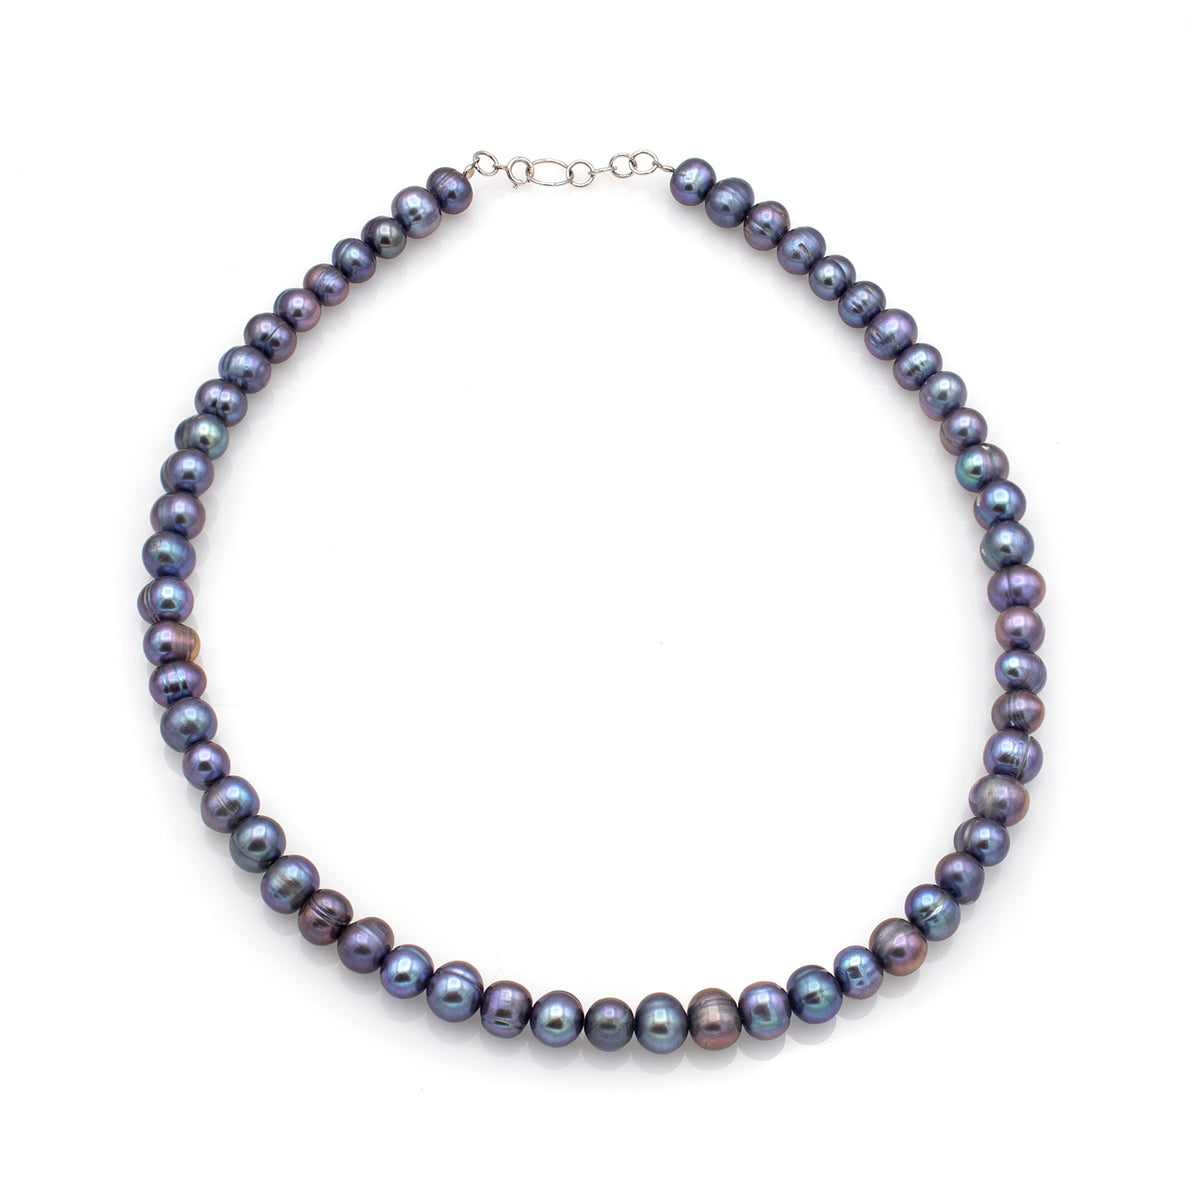 Necklace Gray purple cultured pearls midi 14k white gold - 38cm